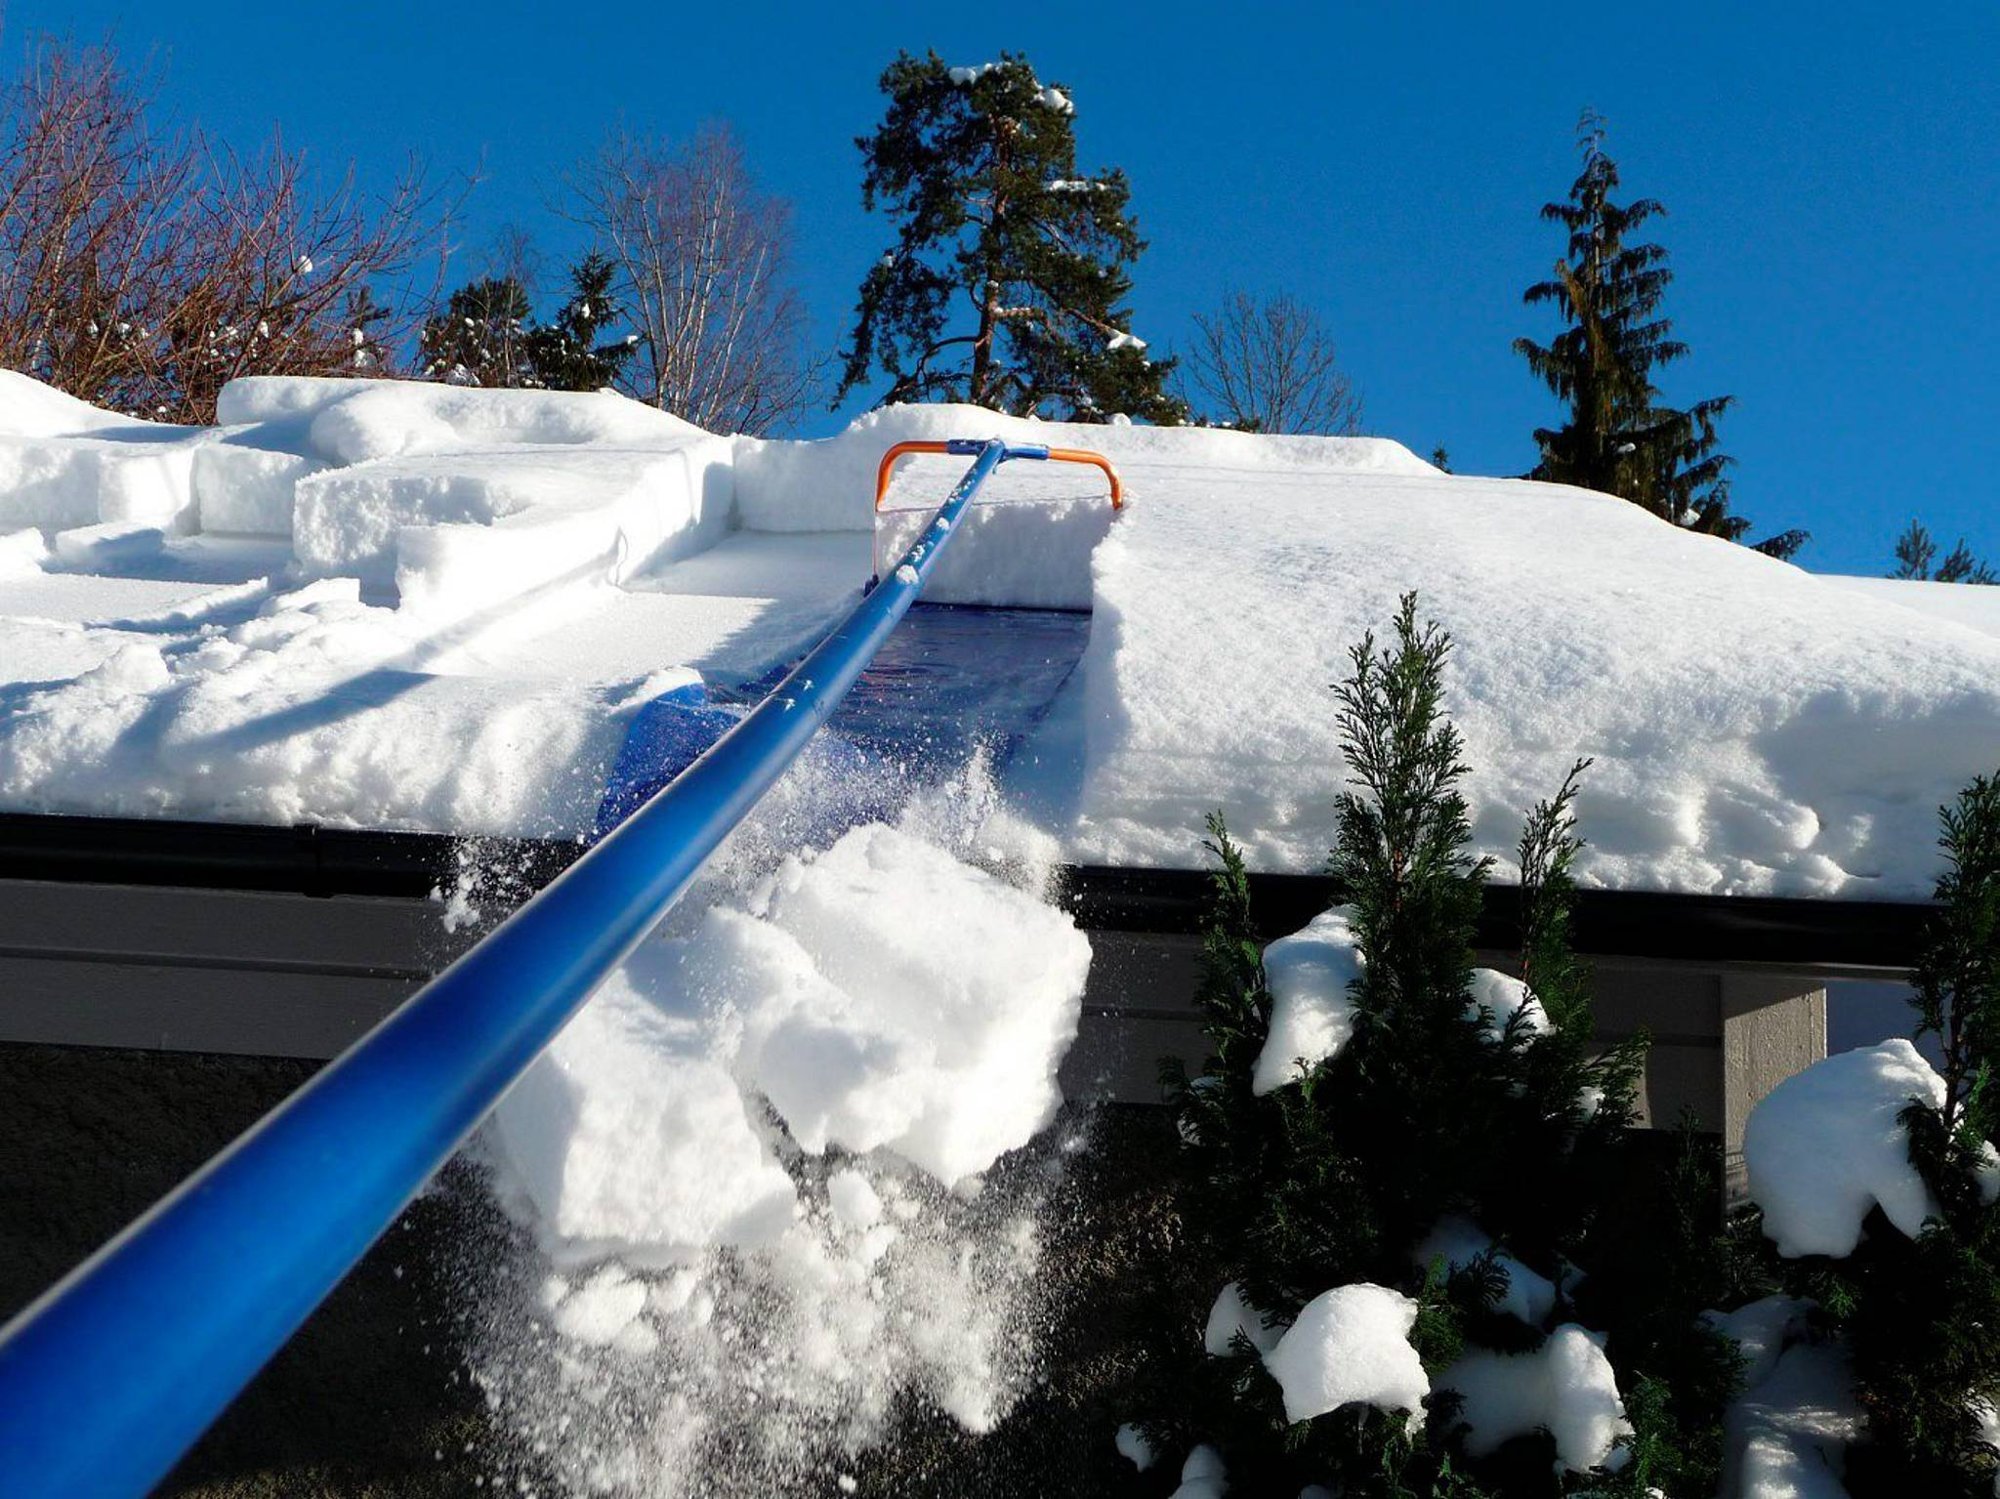 Работы по очистке крыши от снега. Скребок для уборки снега с крыши с тканью 1,9-6,3м 11646. Скребок для уборки снега с крыши с тканью 1,9-6,3м 11646 дракон. Скребок для снега с крыши с тканью 1.9-6.3м 11646. Скребок для уборки снега с крыши скрепер с тканью "лавина" 1,9-6,3м 11646.